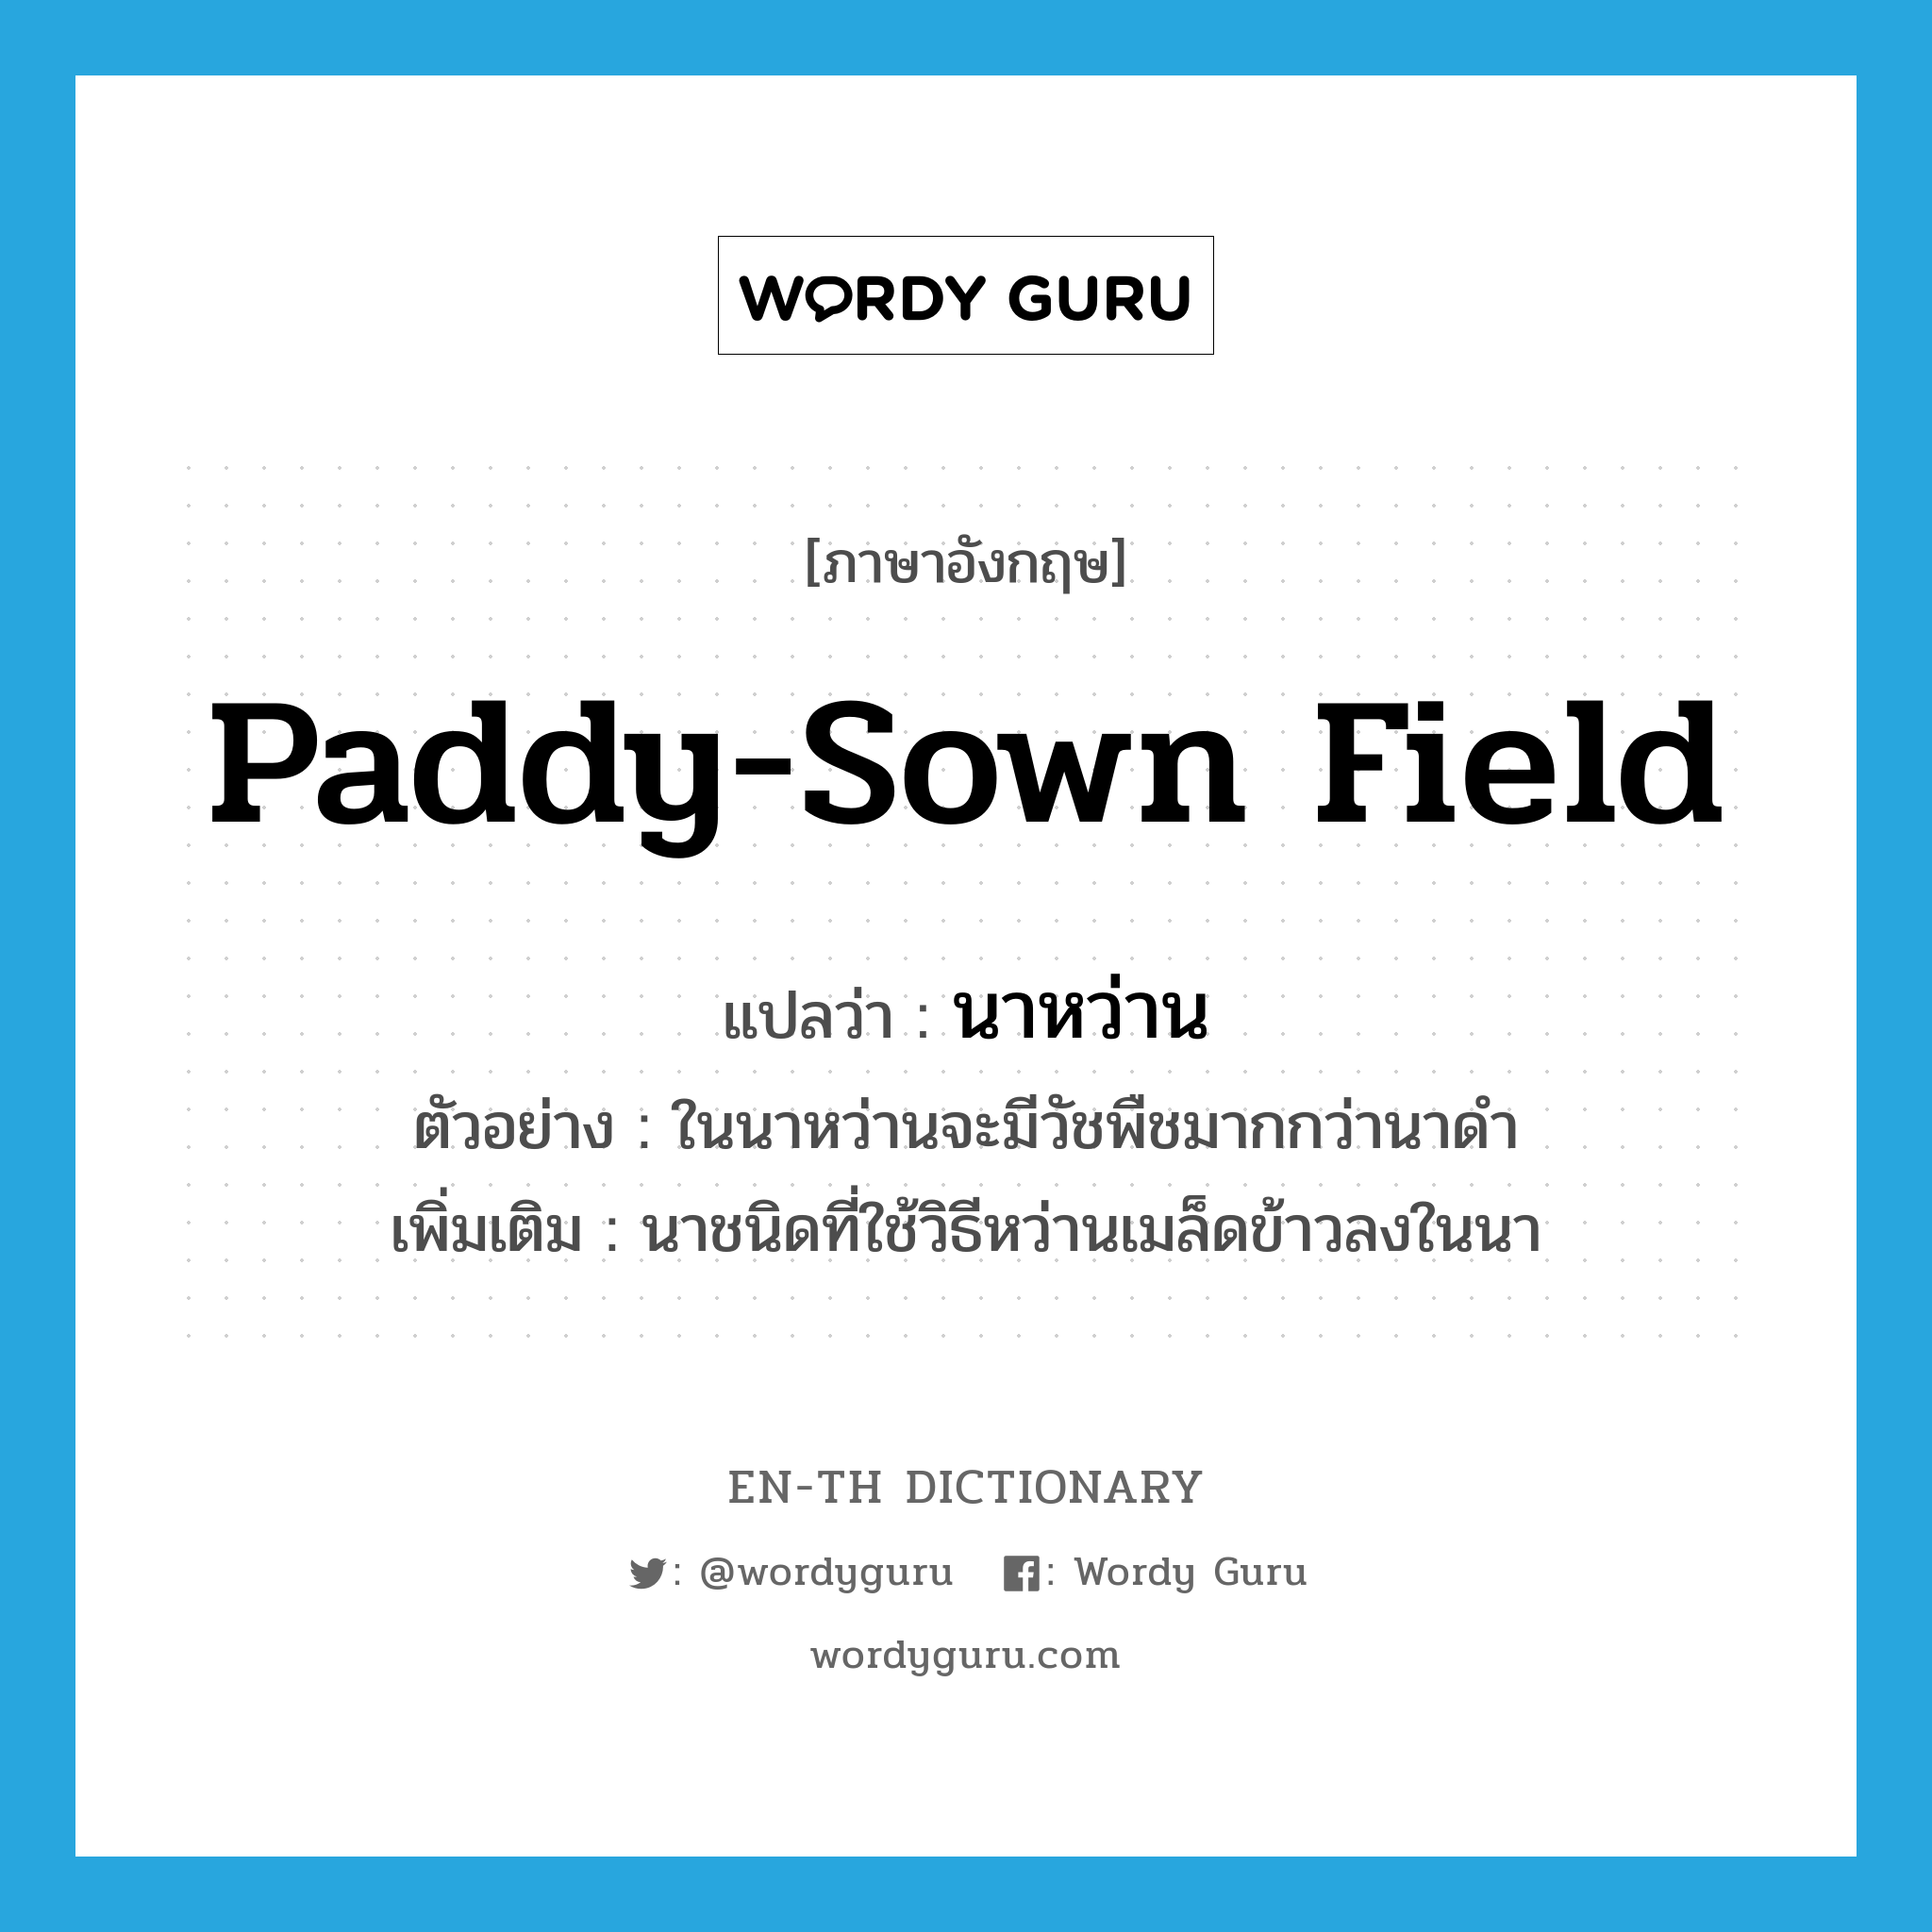 paddy-sown field แปลว่า?, คำศัพท์ภาษาอังกฤษ paddy-sown field แปลว่า นาหว่าน ประเภท N ตัวอย่าง ในนาหว่านจะมีวัชพืชมากกว่านาดำ เพิ่มเติม นาชนิดที่ใช้วิธีหว่านเมล็ดข้าวลงในนา หมวด N